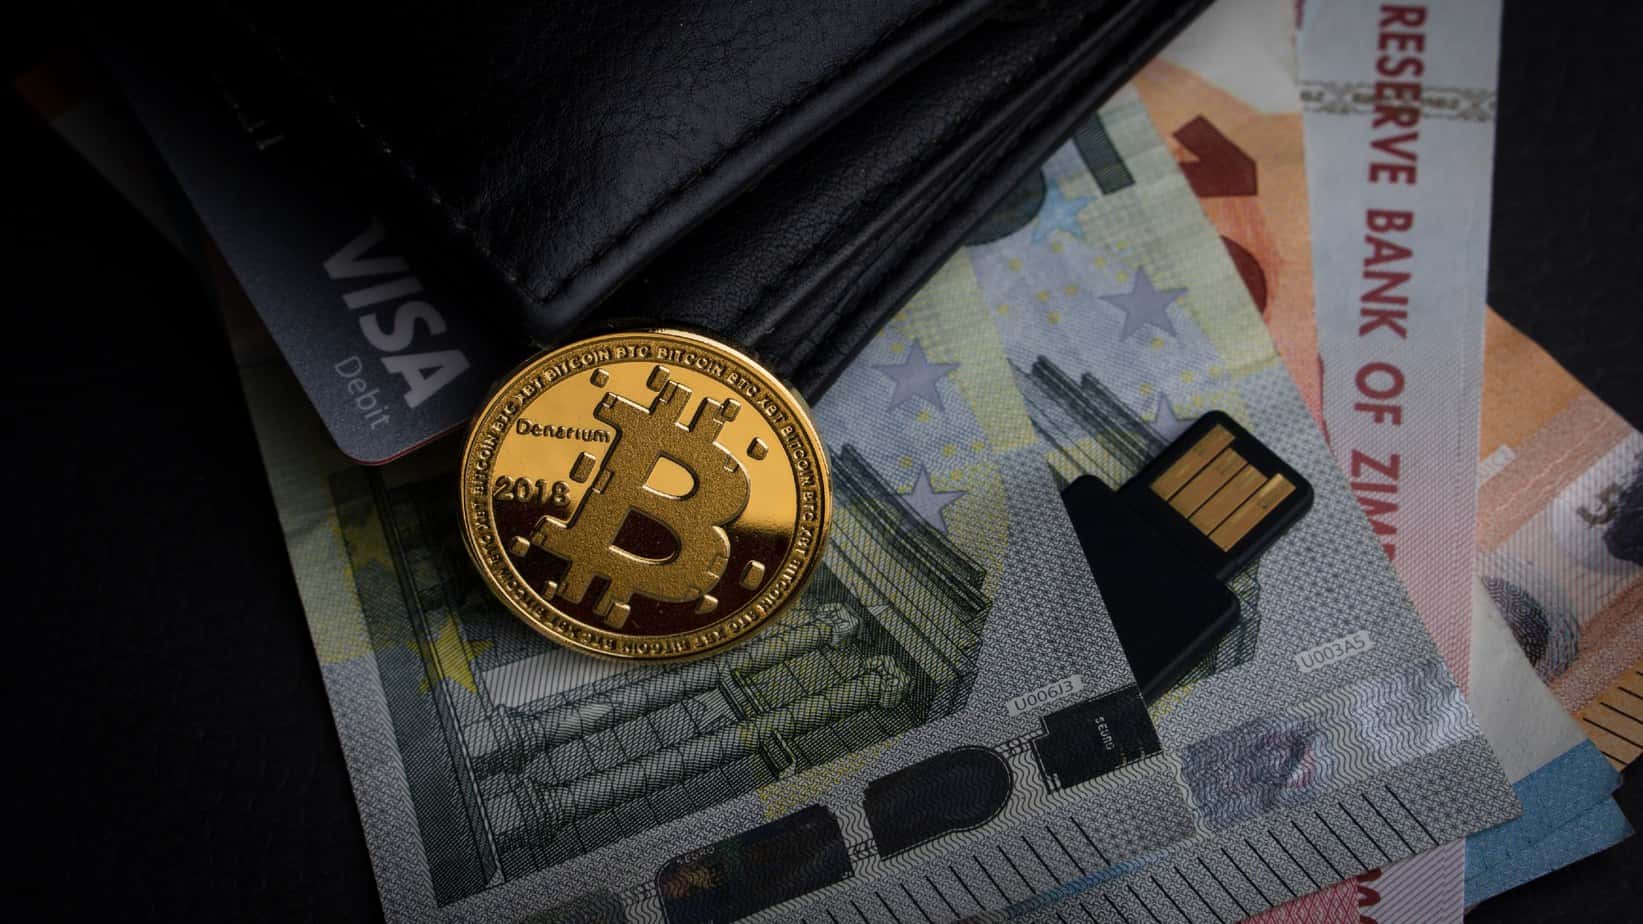 acheter en bitcoin sur amazon